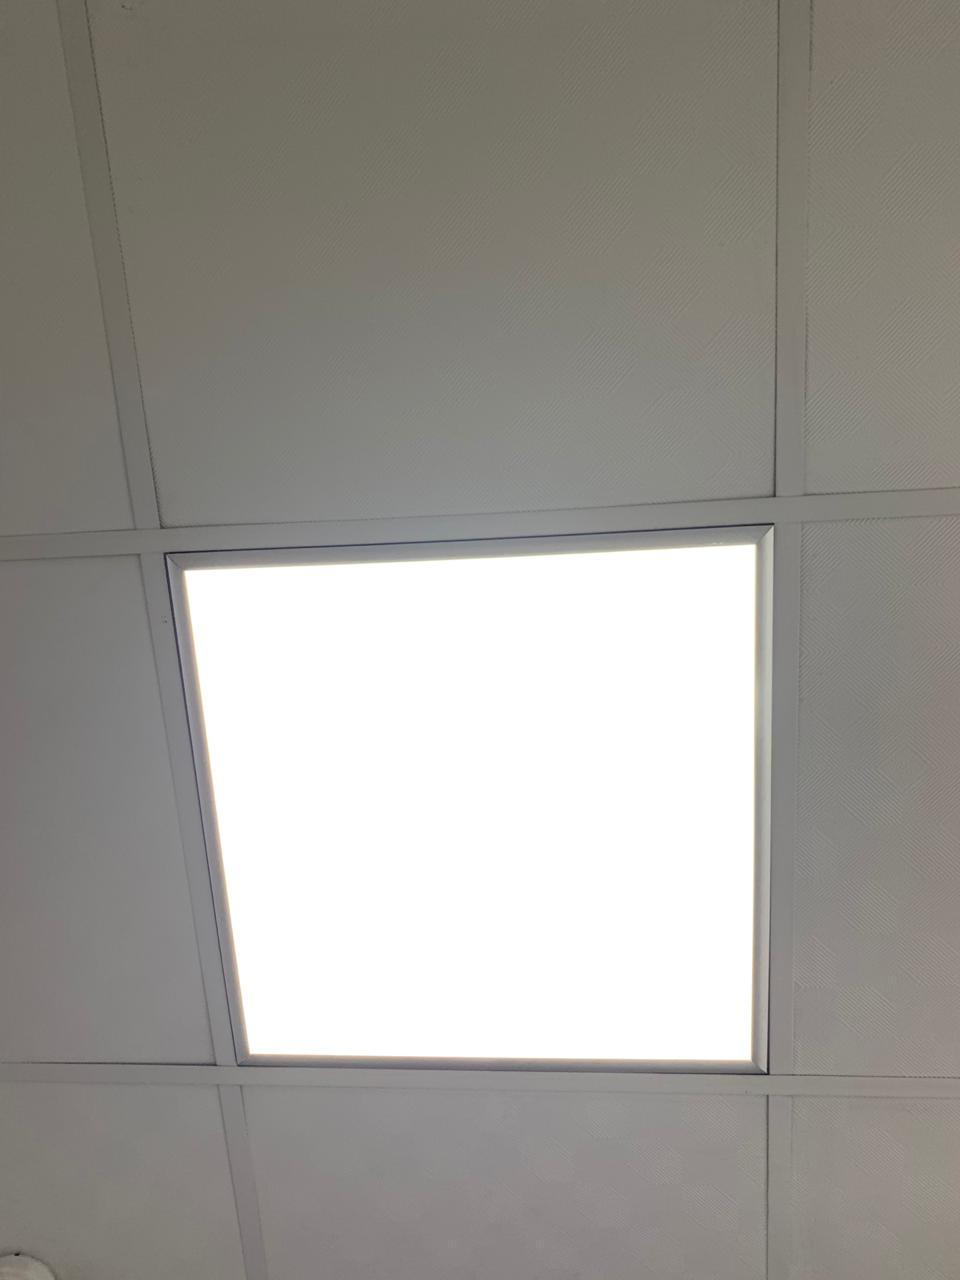 Светильники Армстронг 50 Вт для подвесного потолка